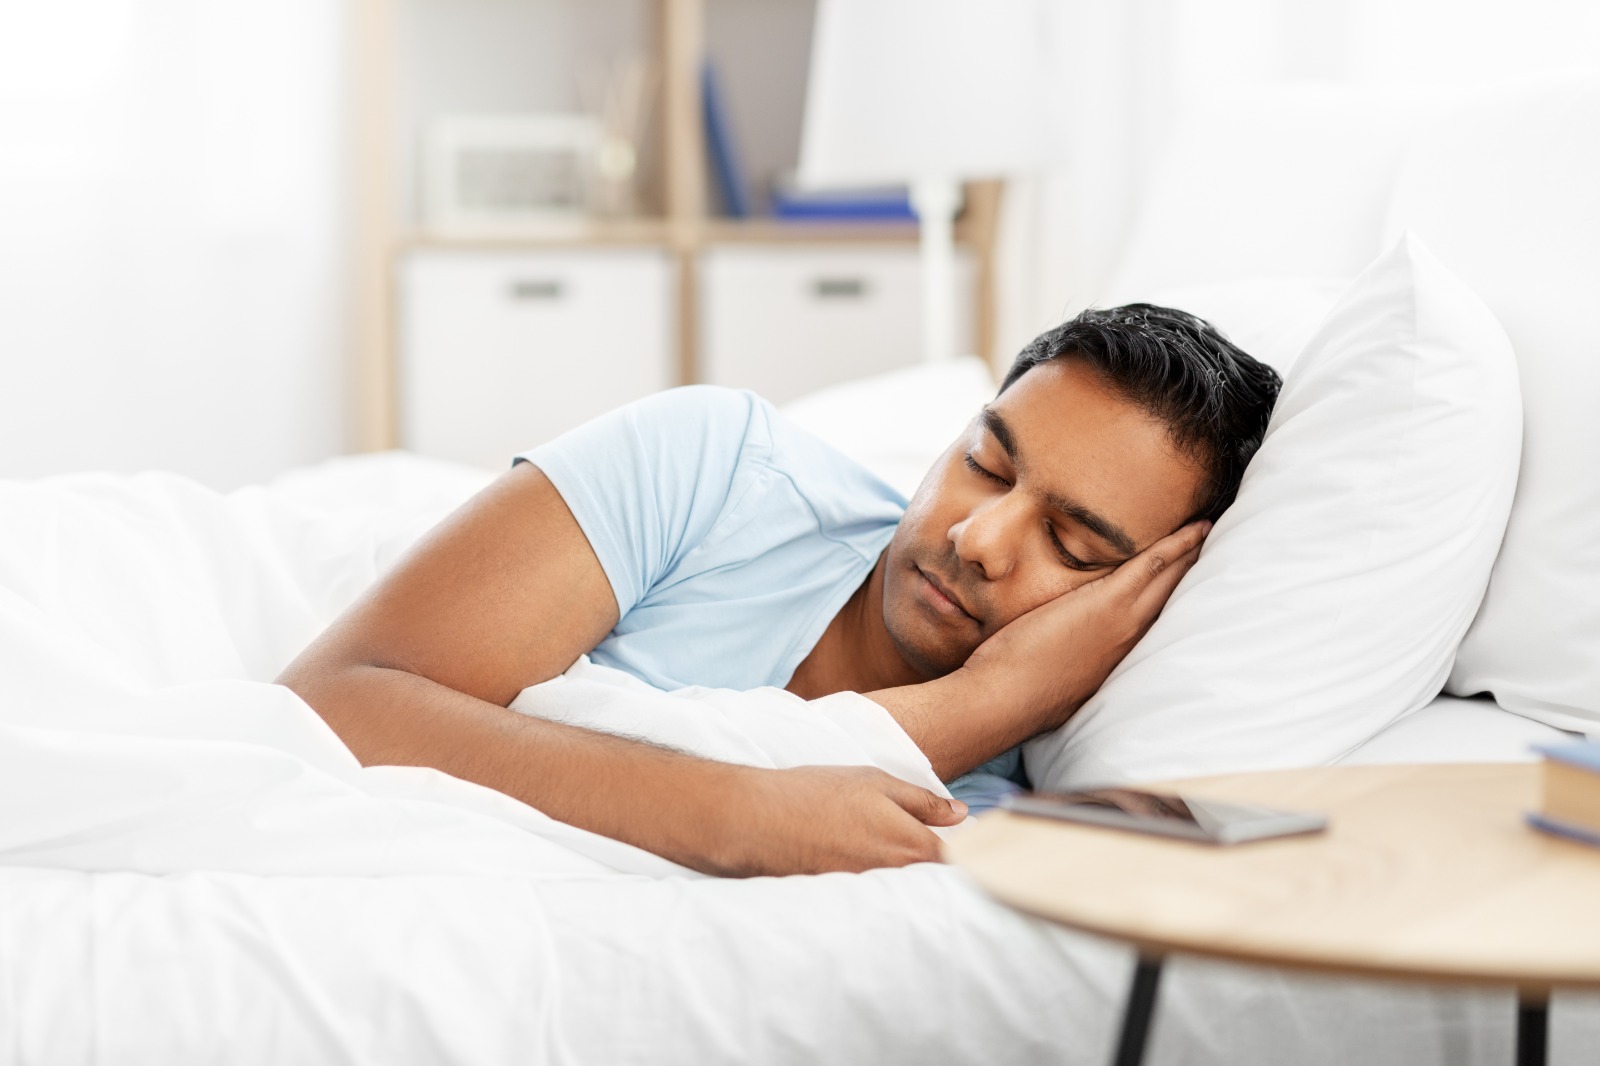 دراسة علمية تثبت أن البشر يحتاجون للنوم فترات أطول في فصل الشتاء